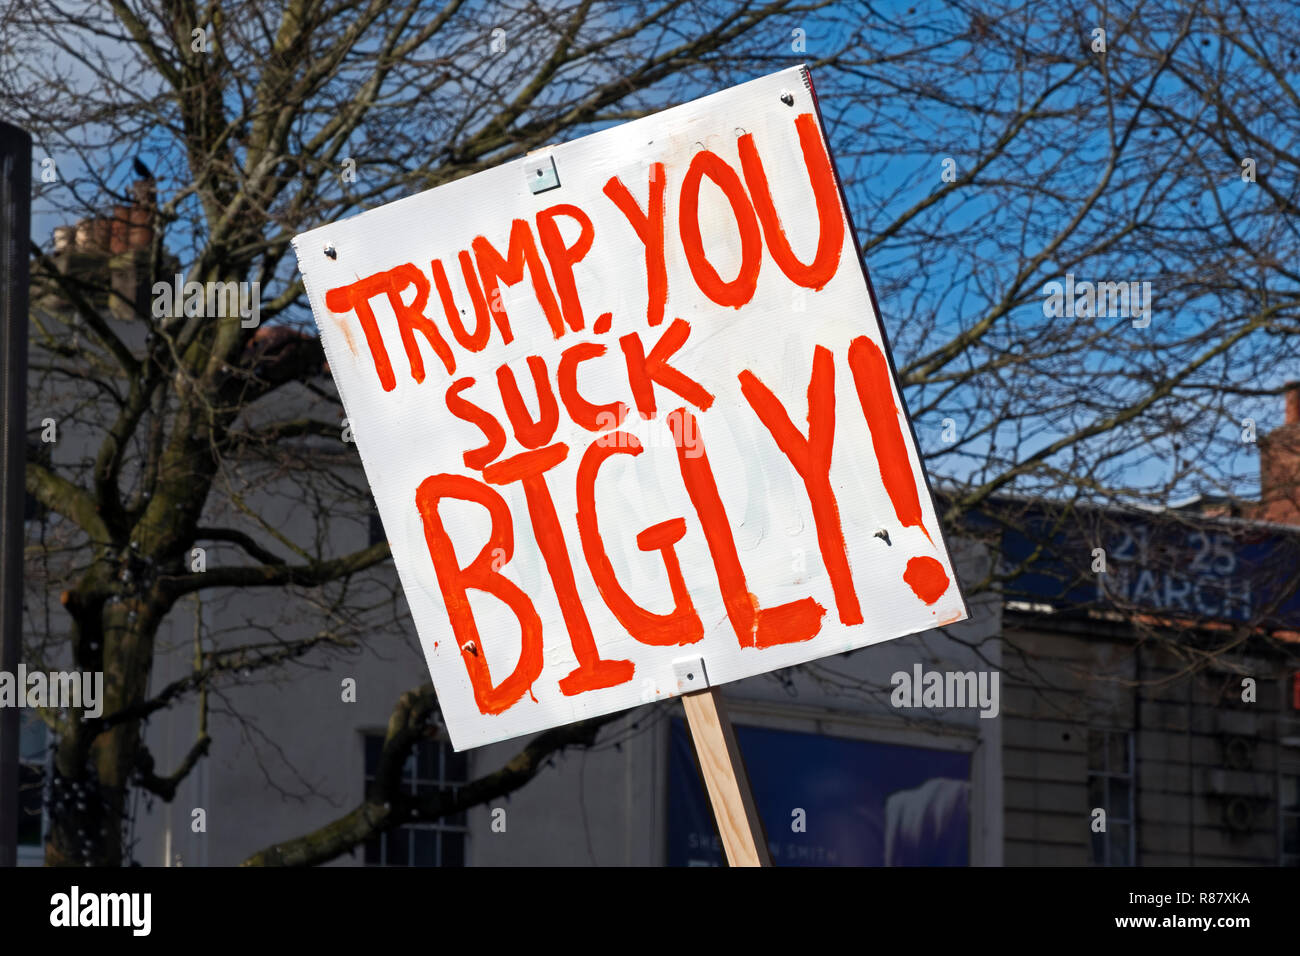 Ein Plakat mit dem Slogan "Trump, sie saugen BIGLY!" bei einer Demonstration gegen die Einwanderung US-Präsident Donald Trump Politik am 4. Februar 2017.. Stockfoto